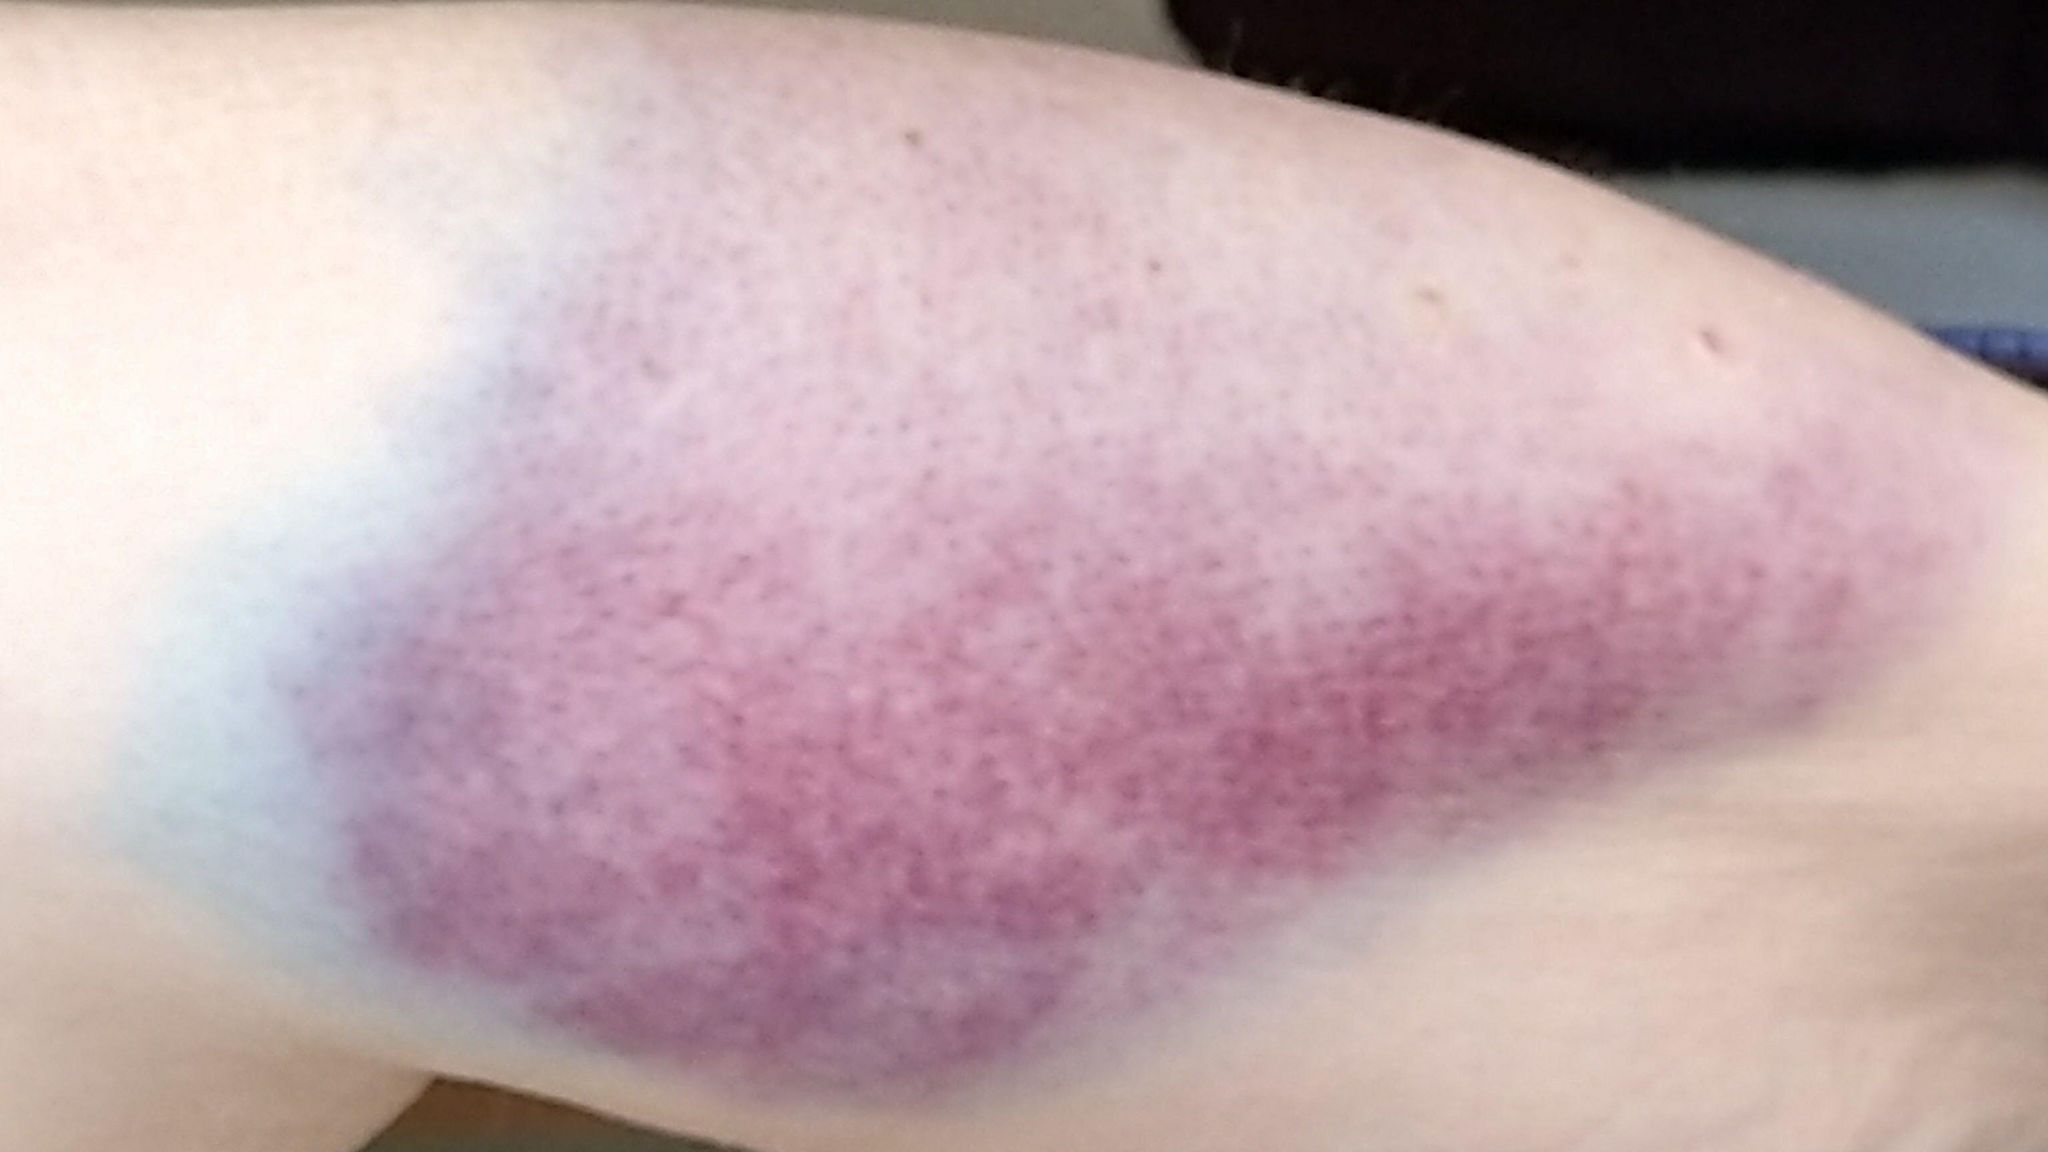 A bruise on an arm